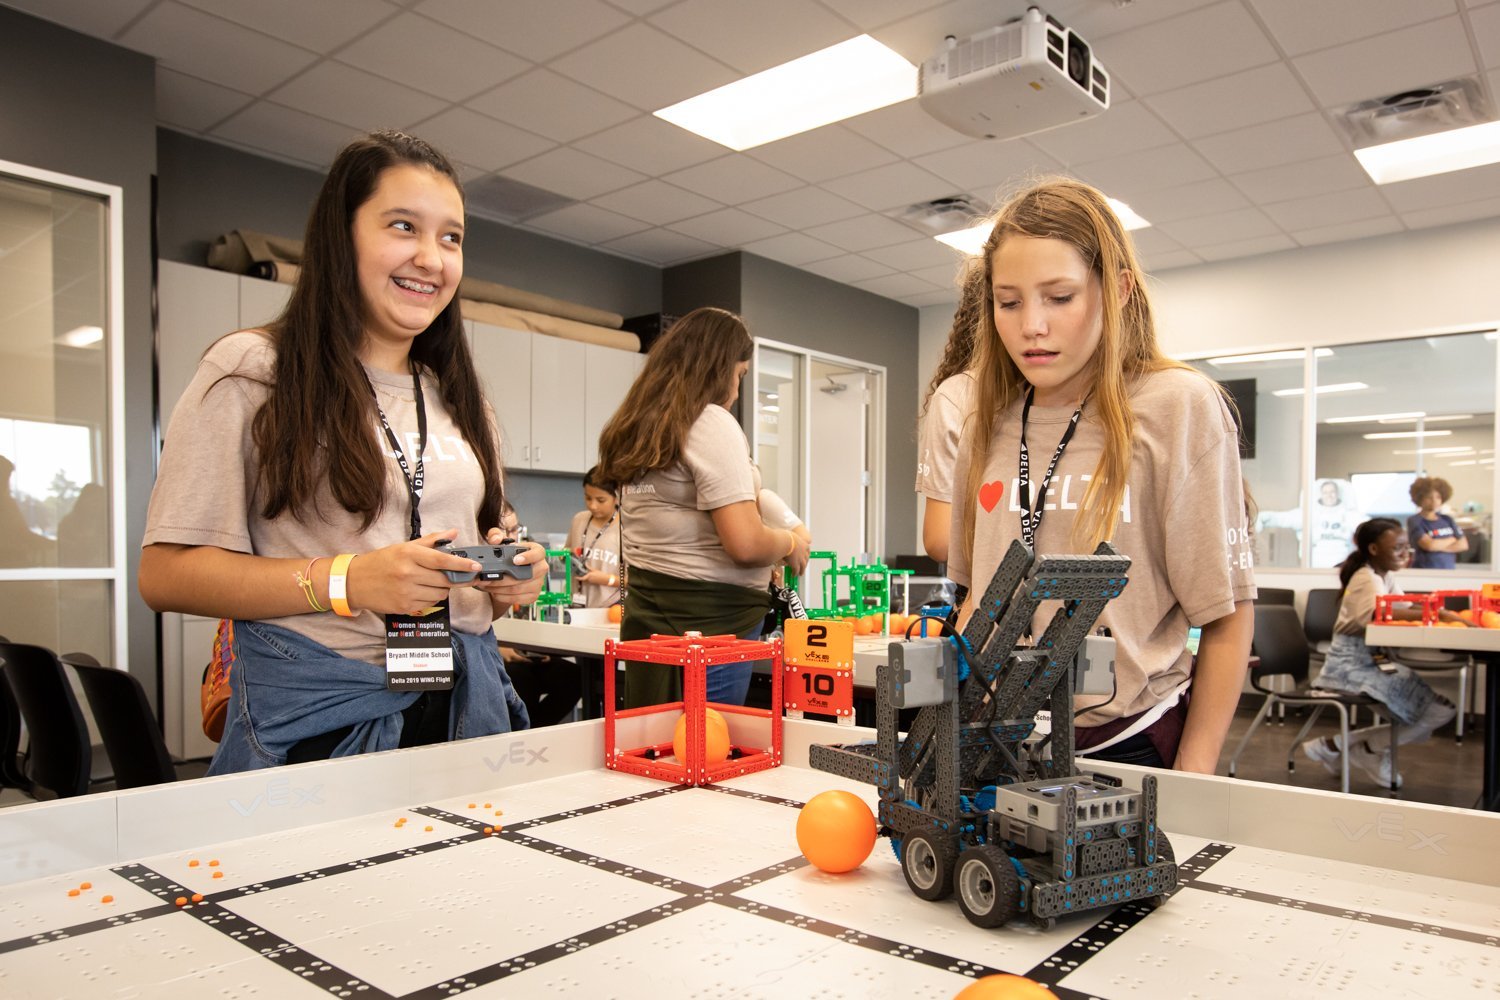 WING participants operating robot at NASA facility | Source: Delta News Hub